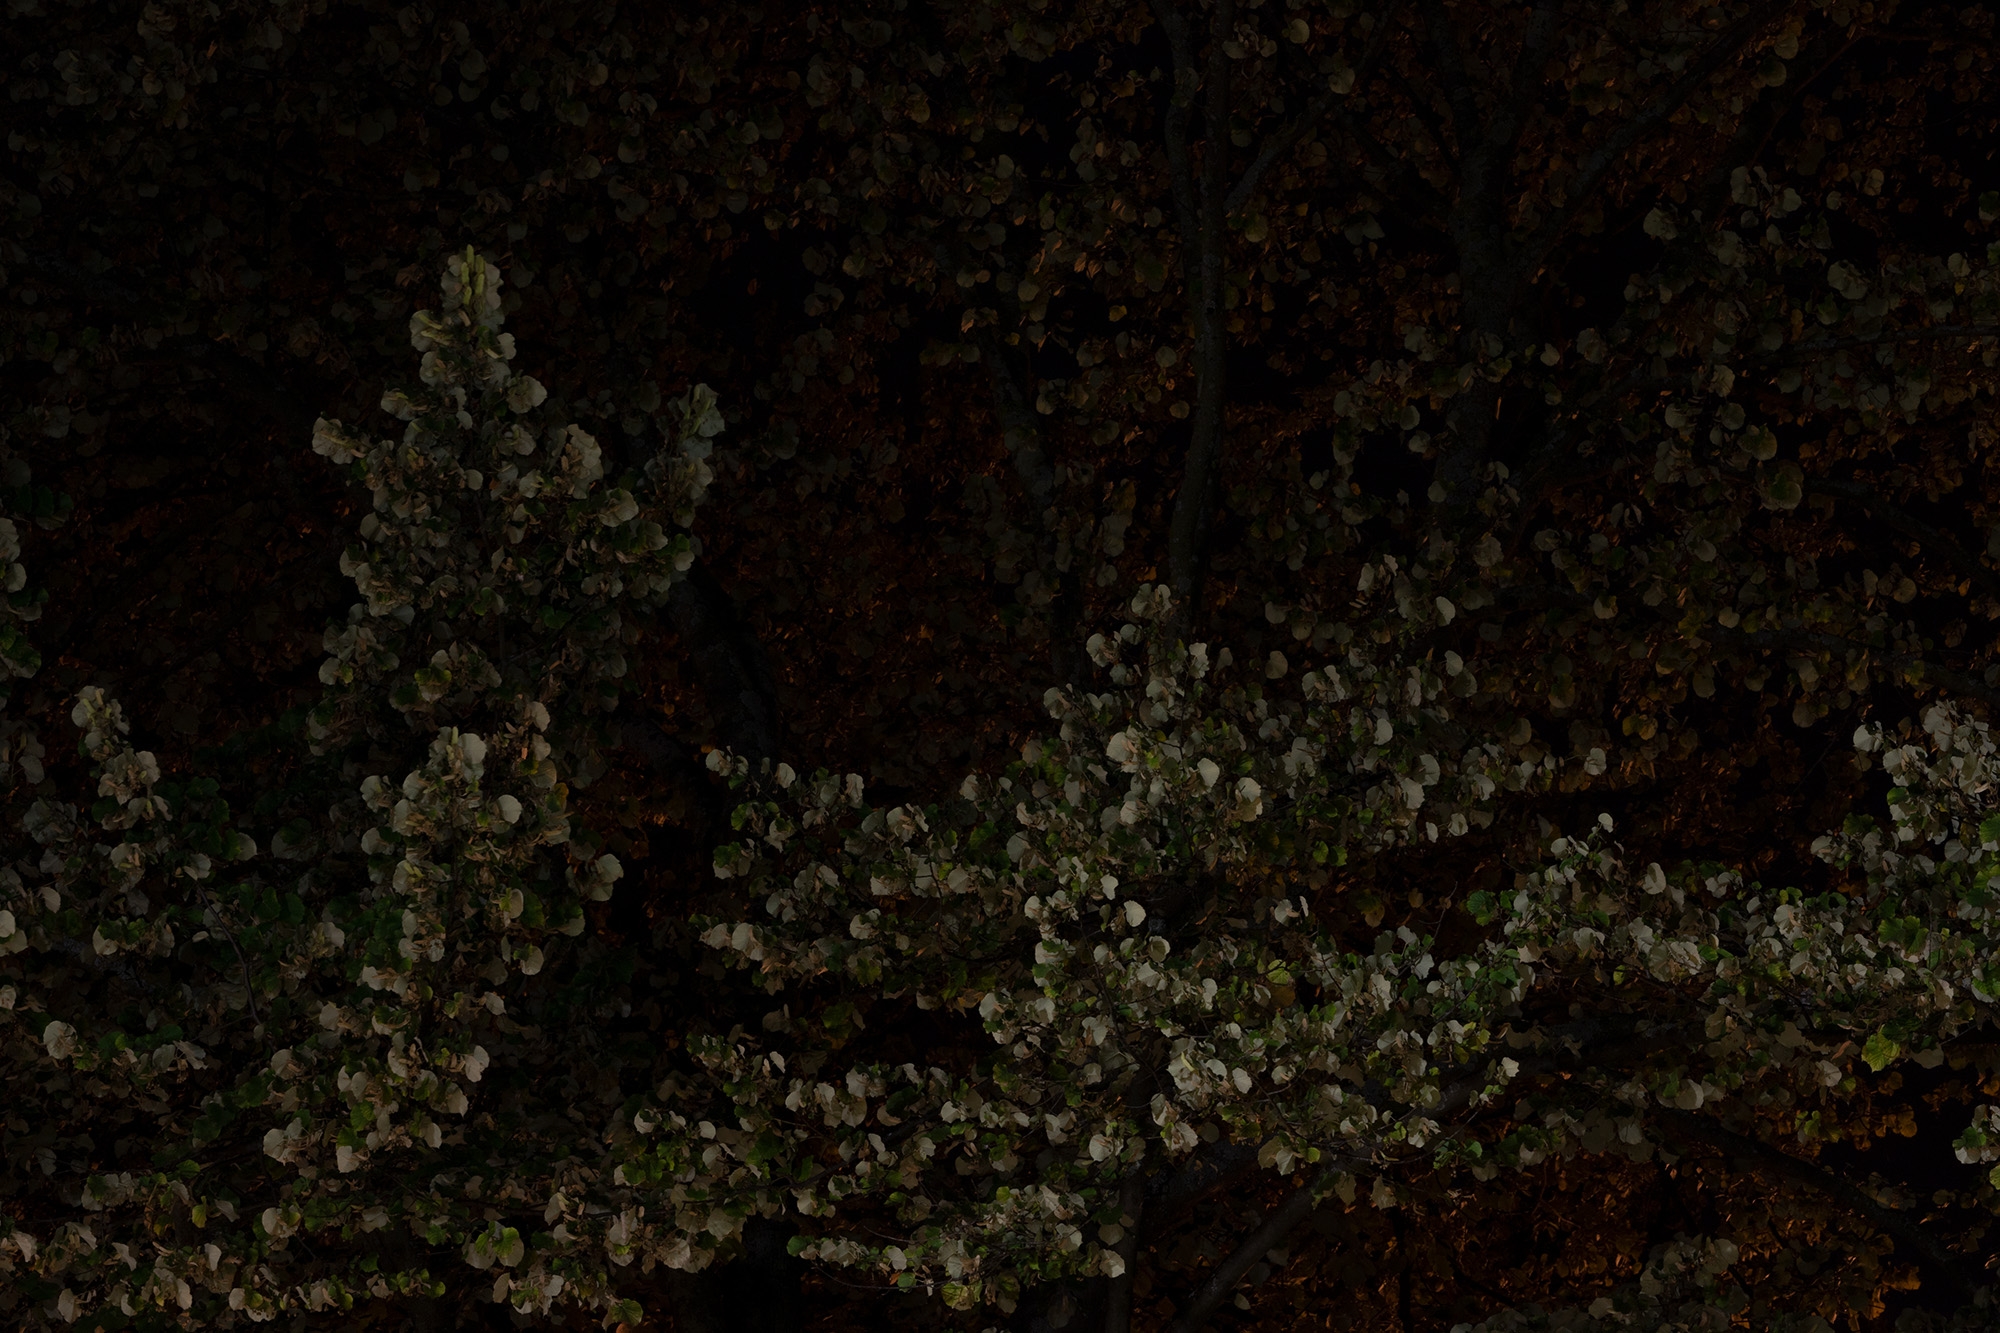 Carina Martins - Physis - detalhe de eucalipto à noite